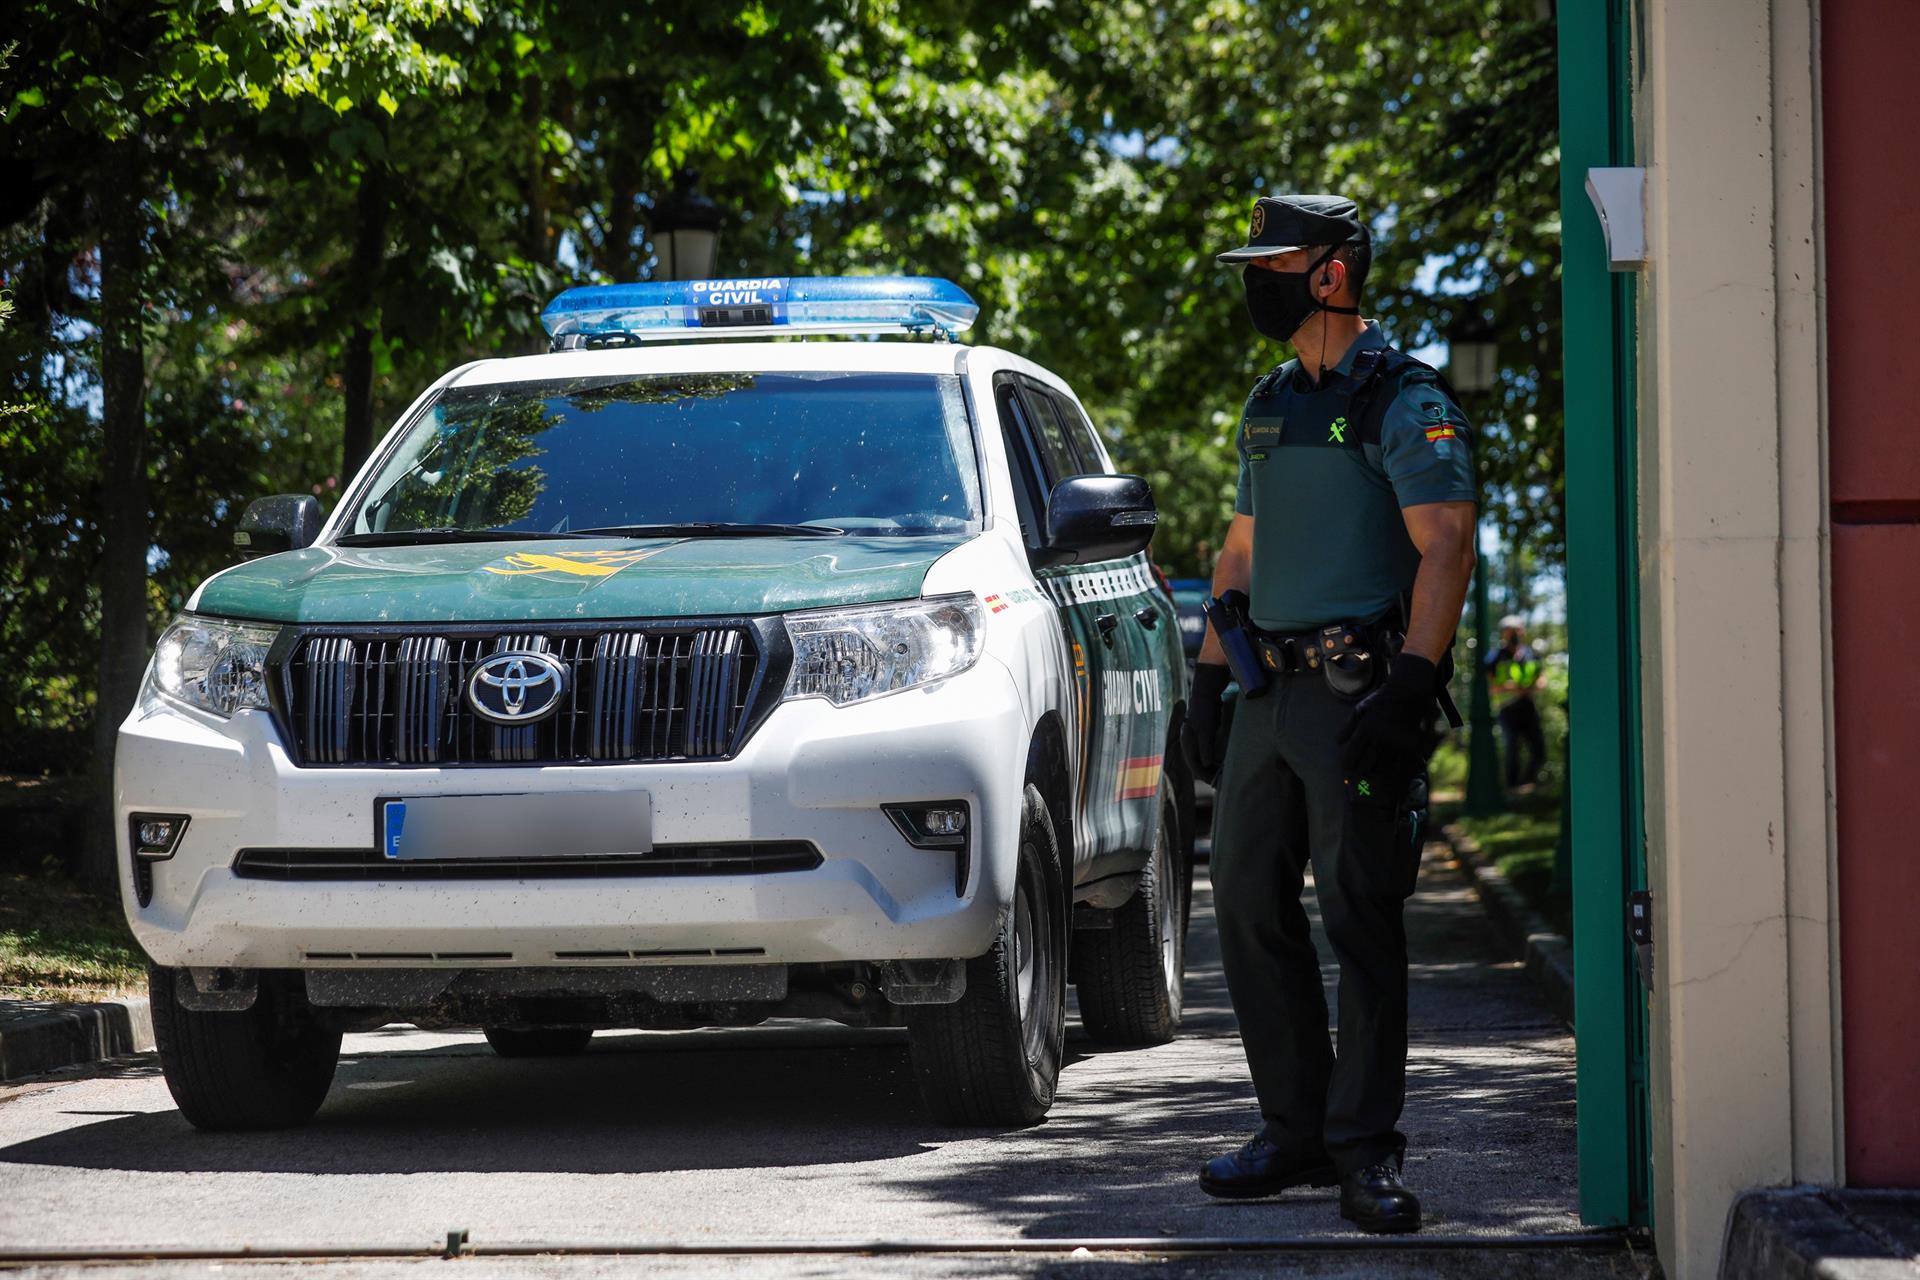 Vehículo de la Guardia Civil a su salida de una vivienda. EFE/David Fernández/Archivo